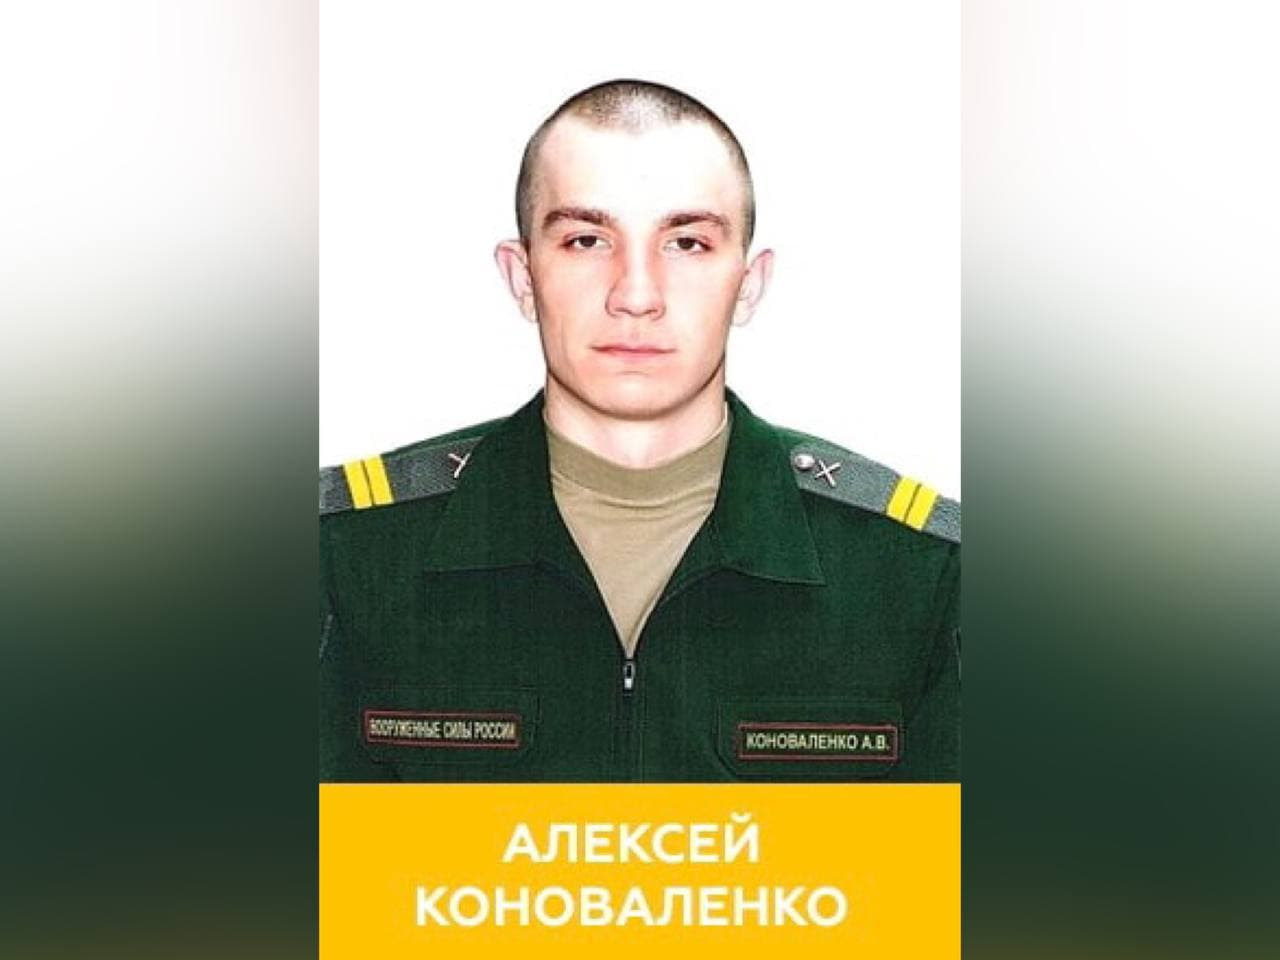 Младший сержант Алексей Коноваленко. Фото © Минобороны РФ